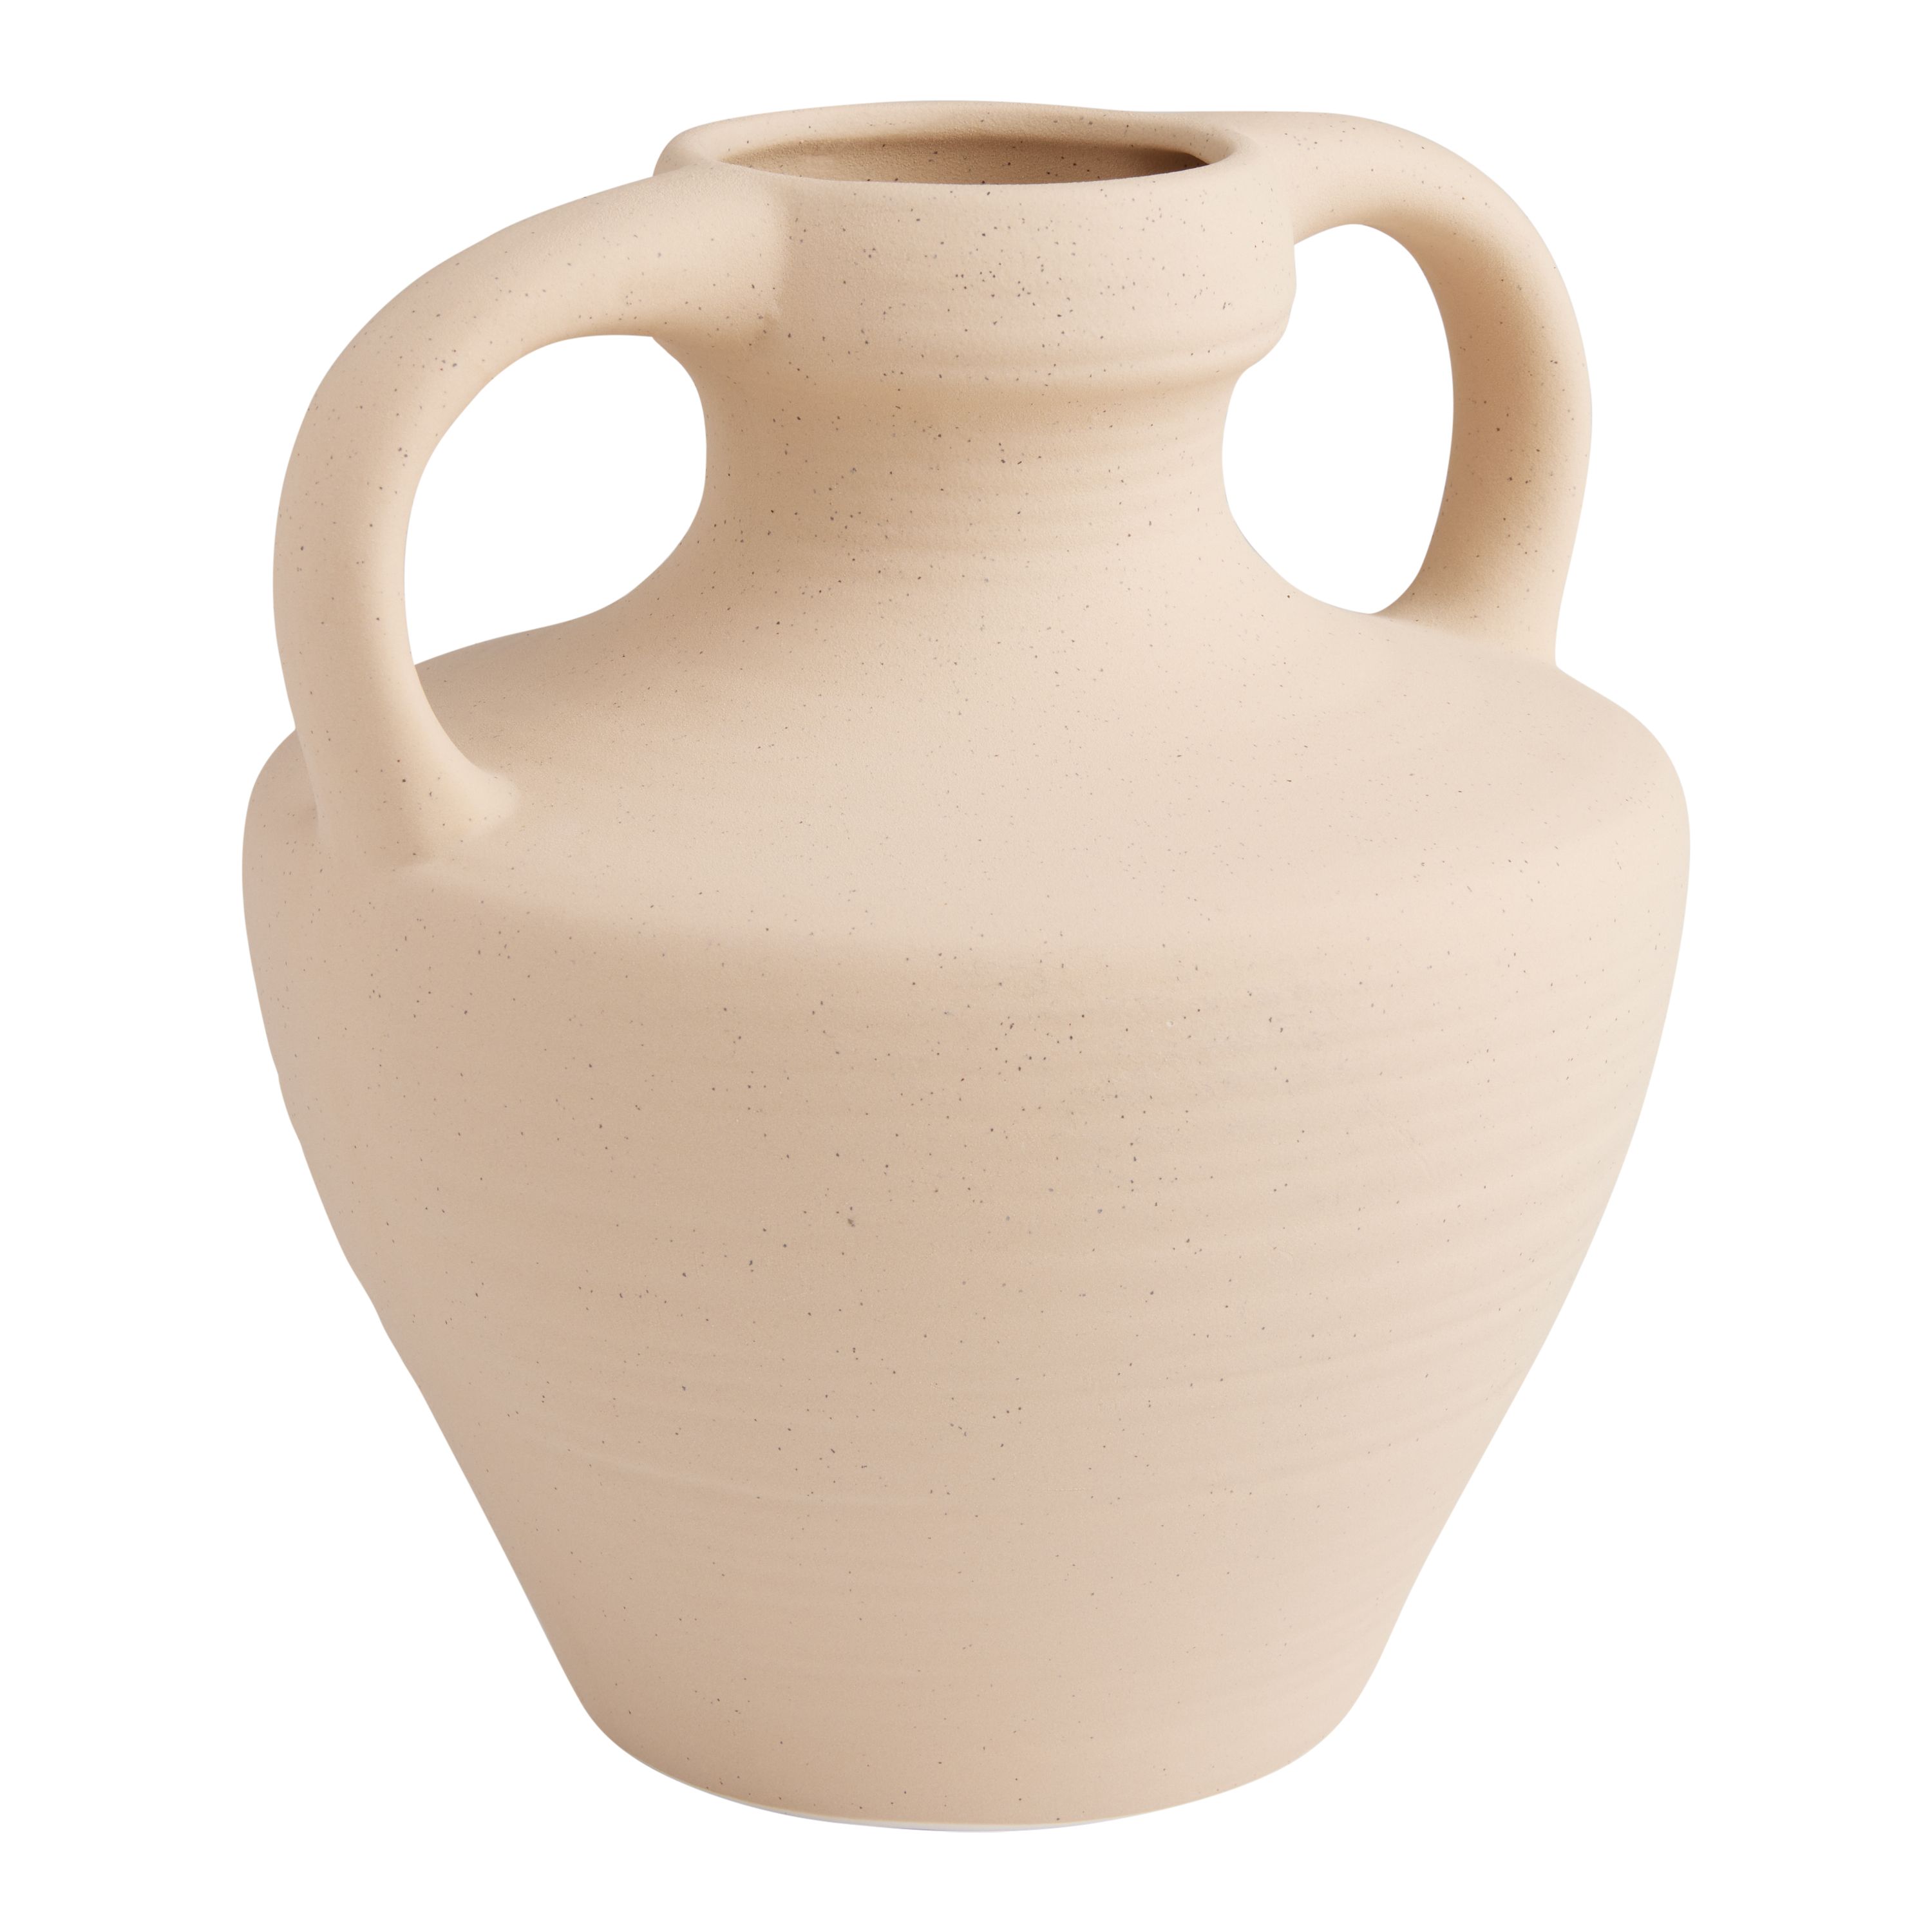 Natural Ceramic Speckled Urn Vase With Handles | World Market